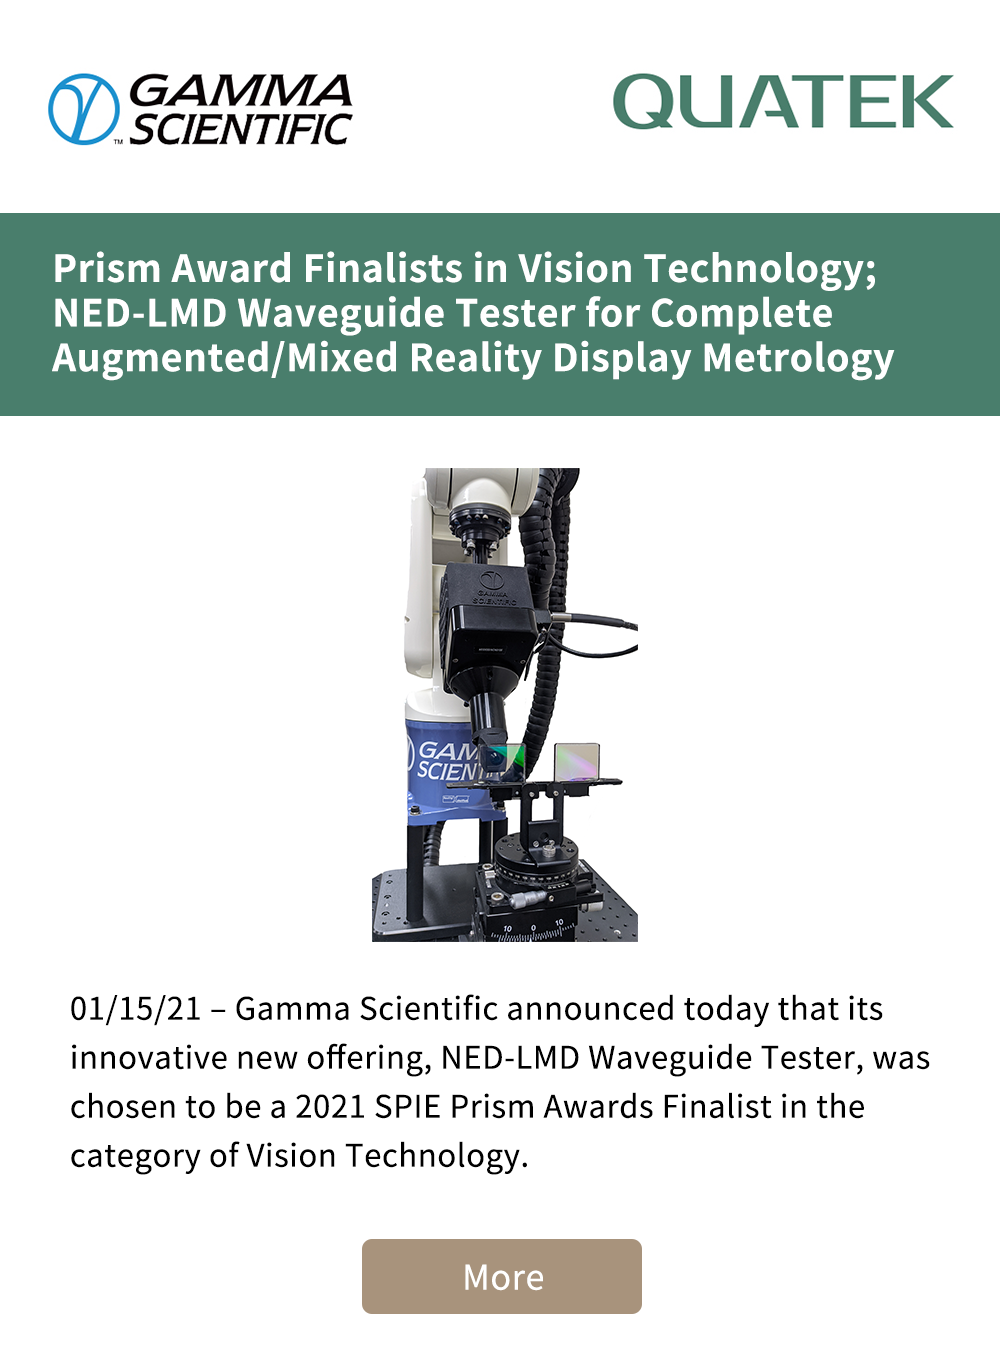 Prism-Award视觉技术决赛产品-en_01.png